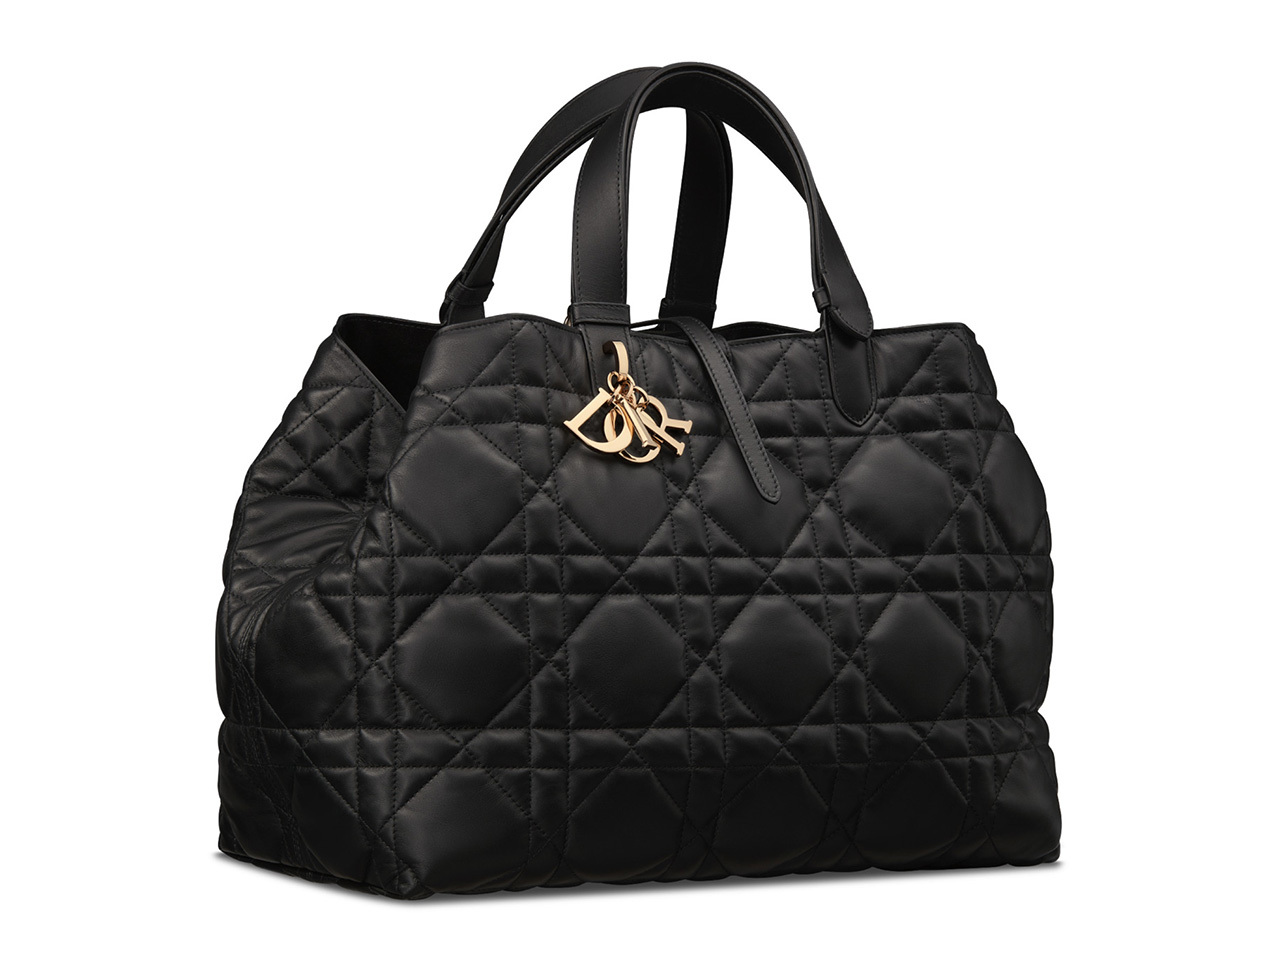 Diorの新作バッグ「ディオール トゥジュール」がマルチに使える